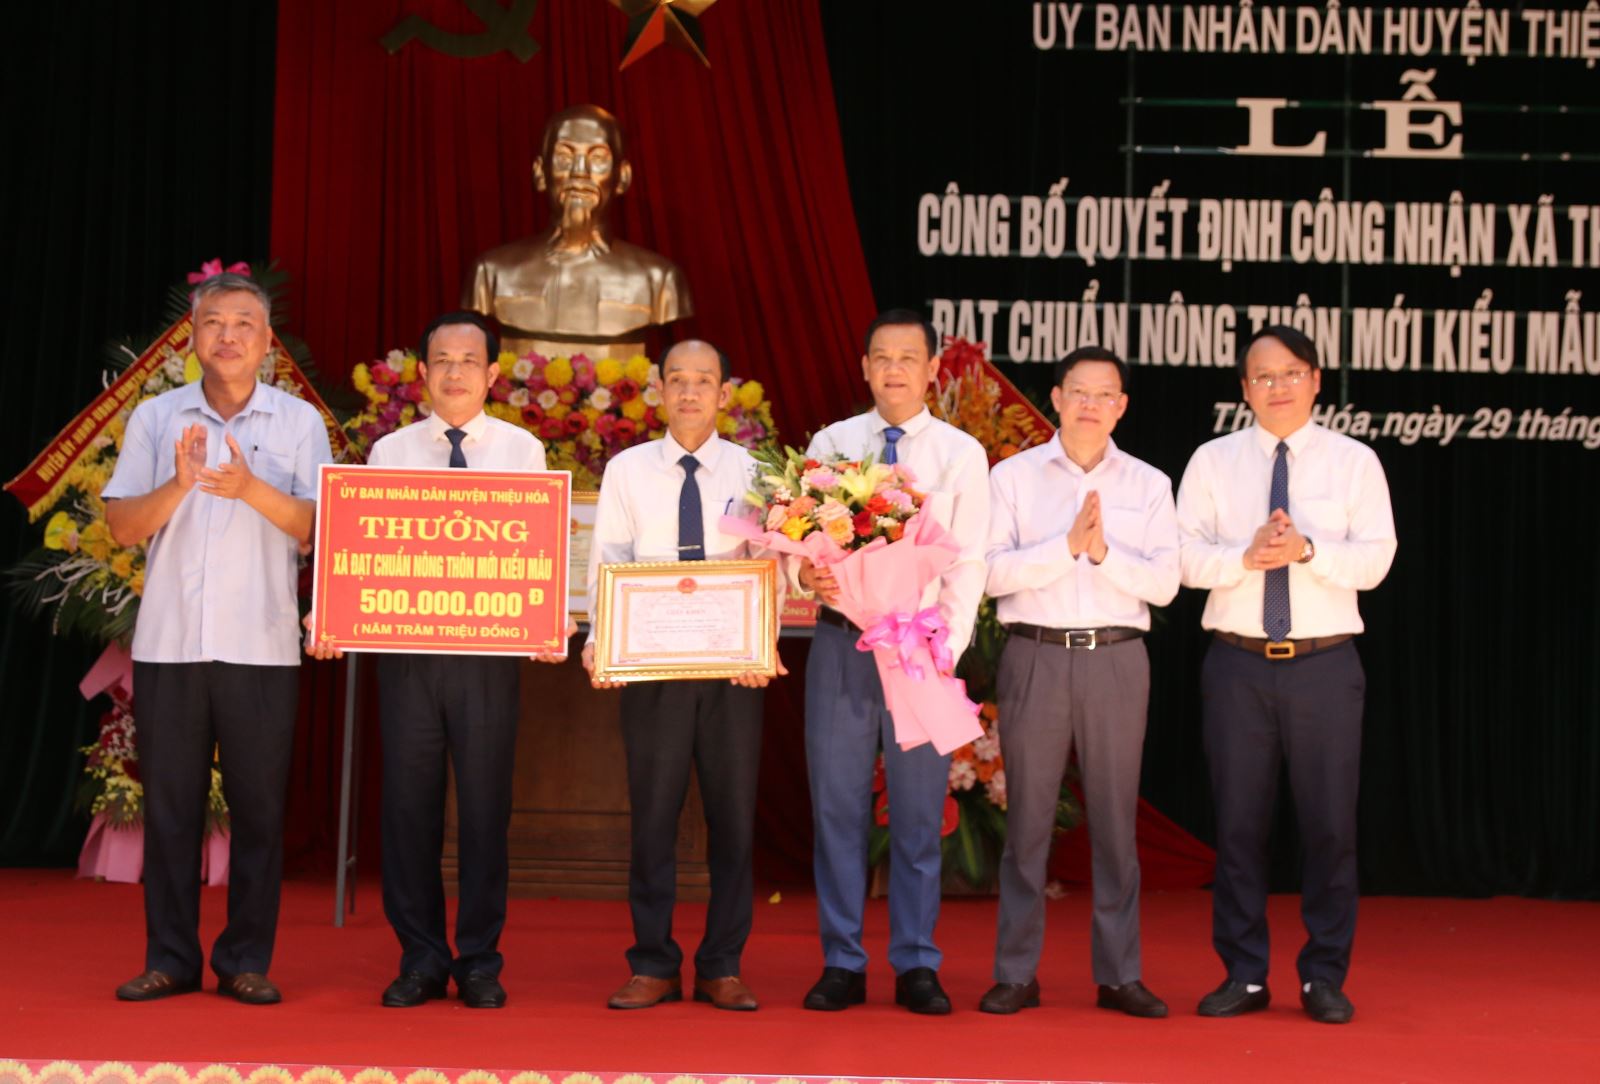 Lãnh đạo huyện Thiệu Hóa trao giấy khen và phần thưởng cho xã Thiệu Nguyên